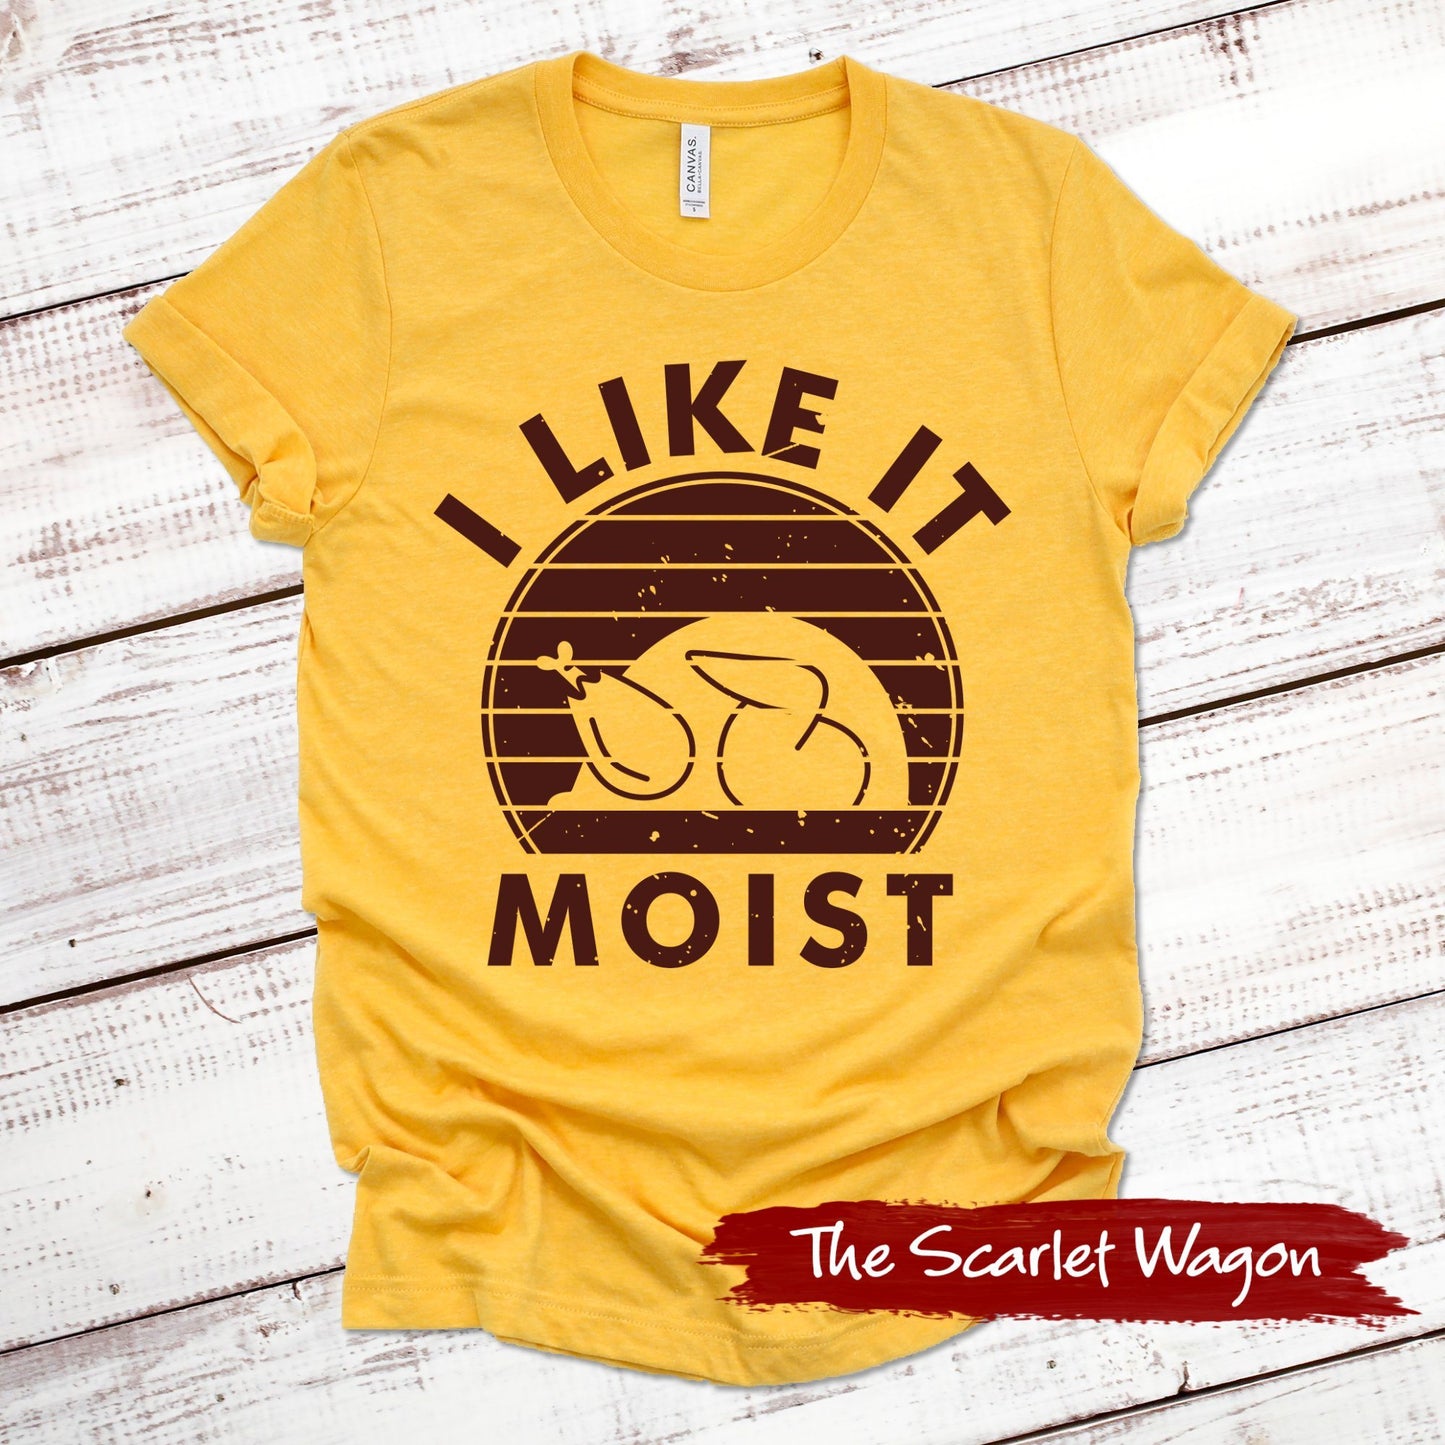 I Like it Moist Fall Shirts Scarlet Wagon Heather Gold XS 